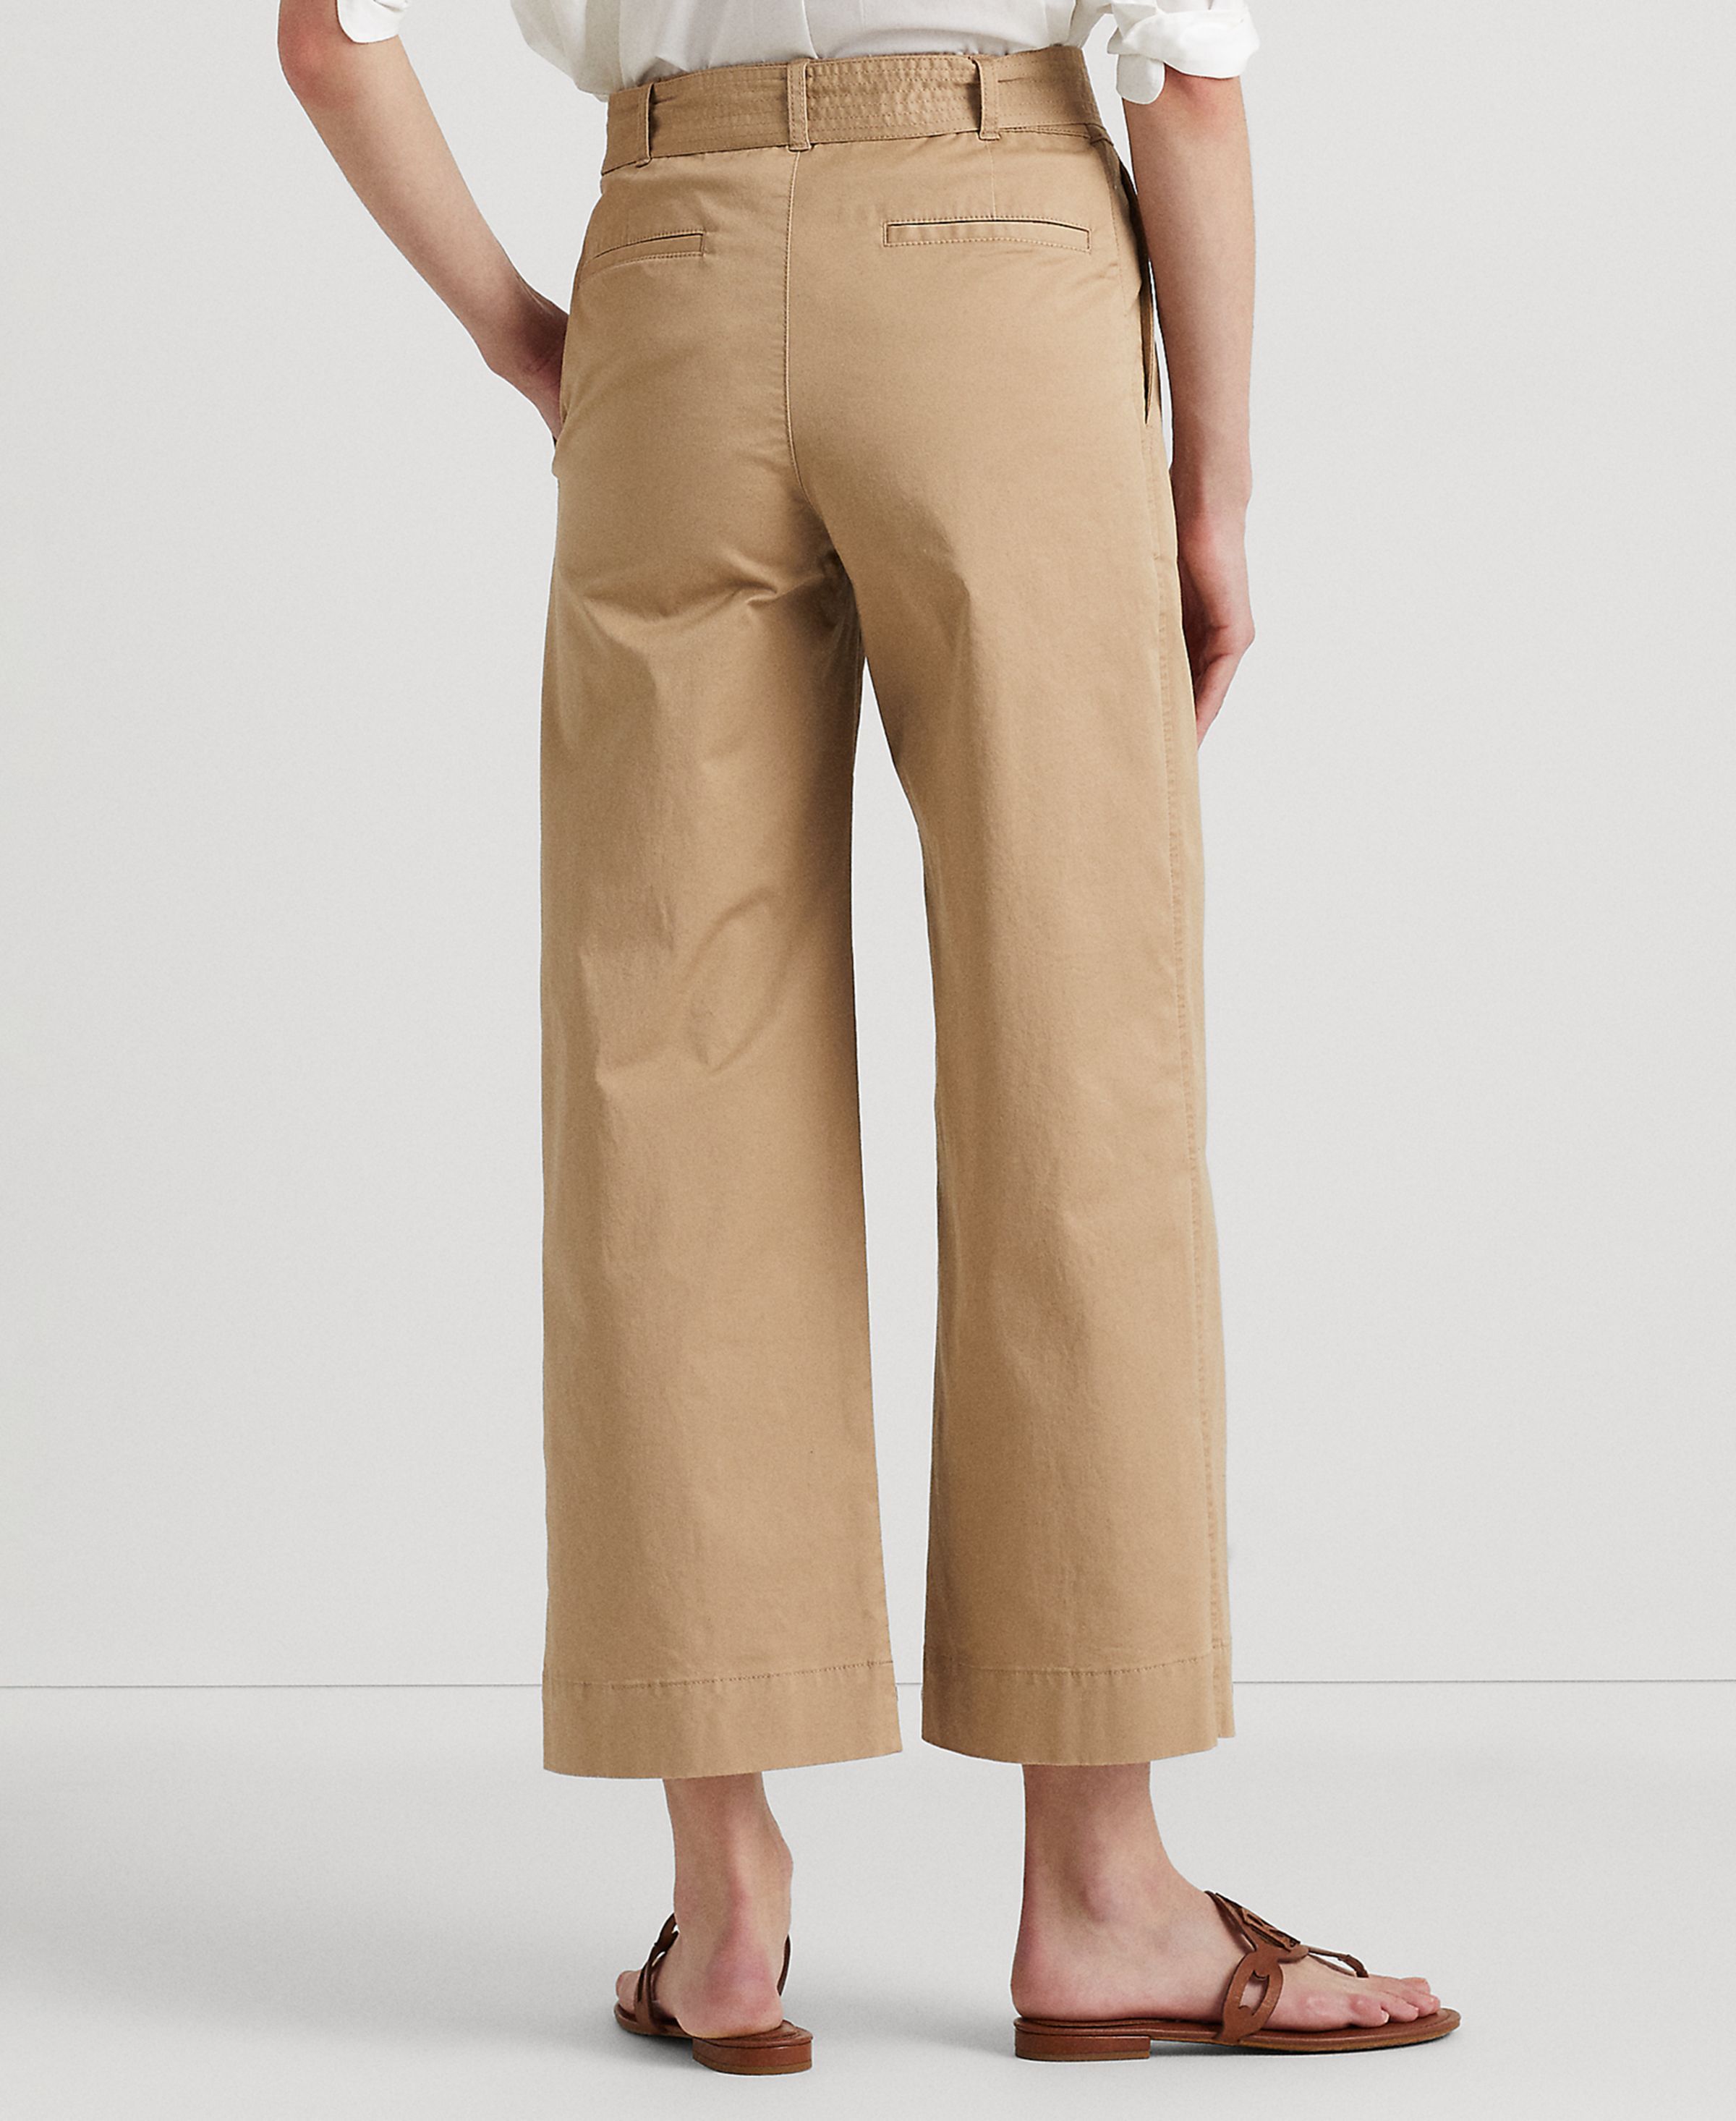 Lauren Ralph Lauren Women's Pants Sz 12 Micro-Sanded Twill Belted Wide-Leg Gold